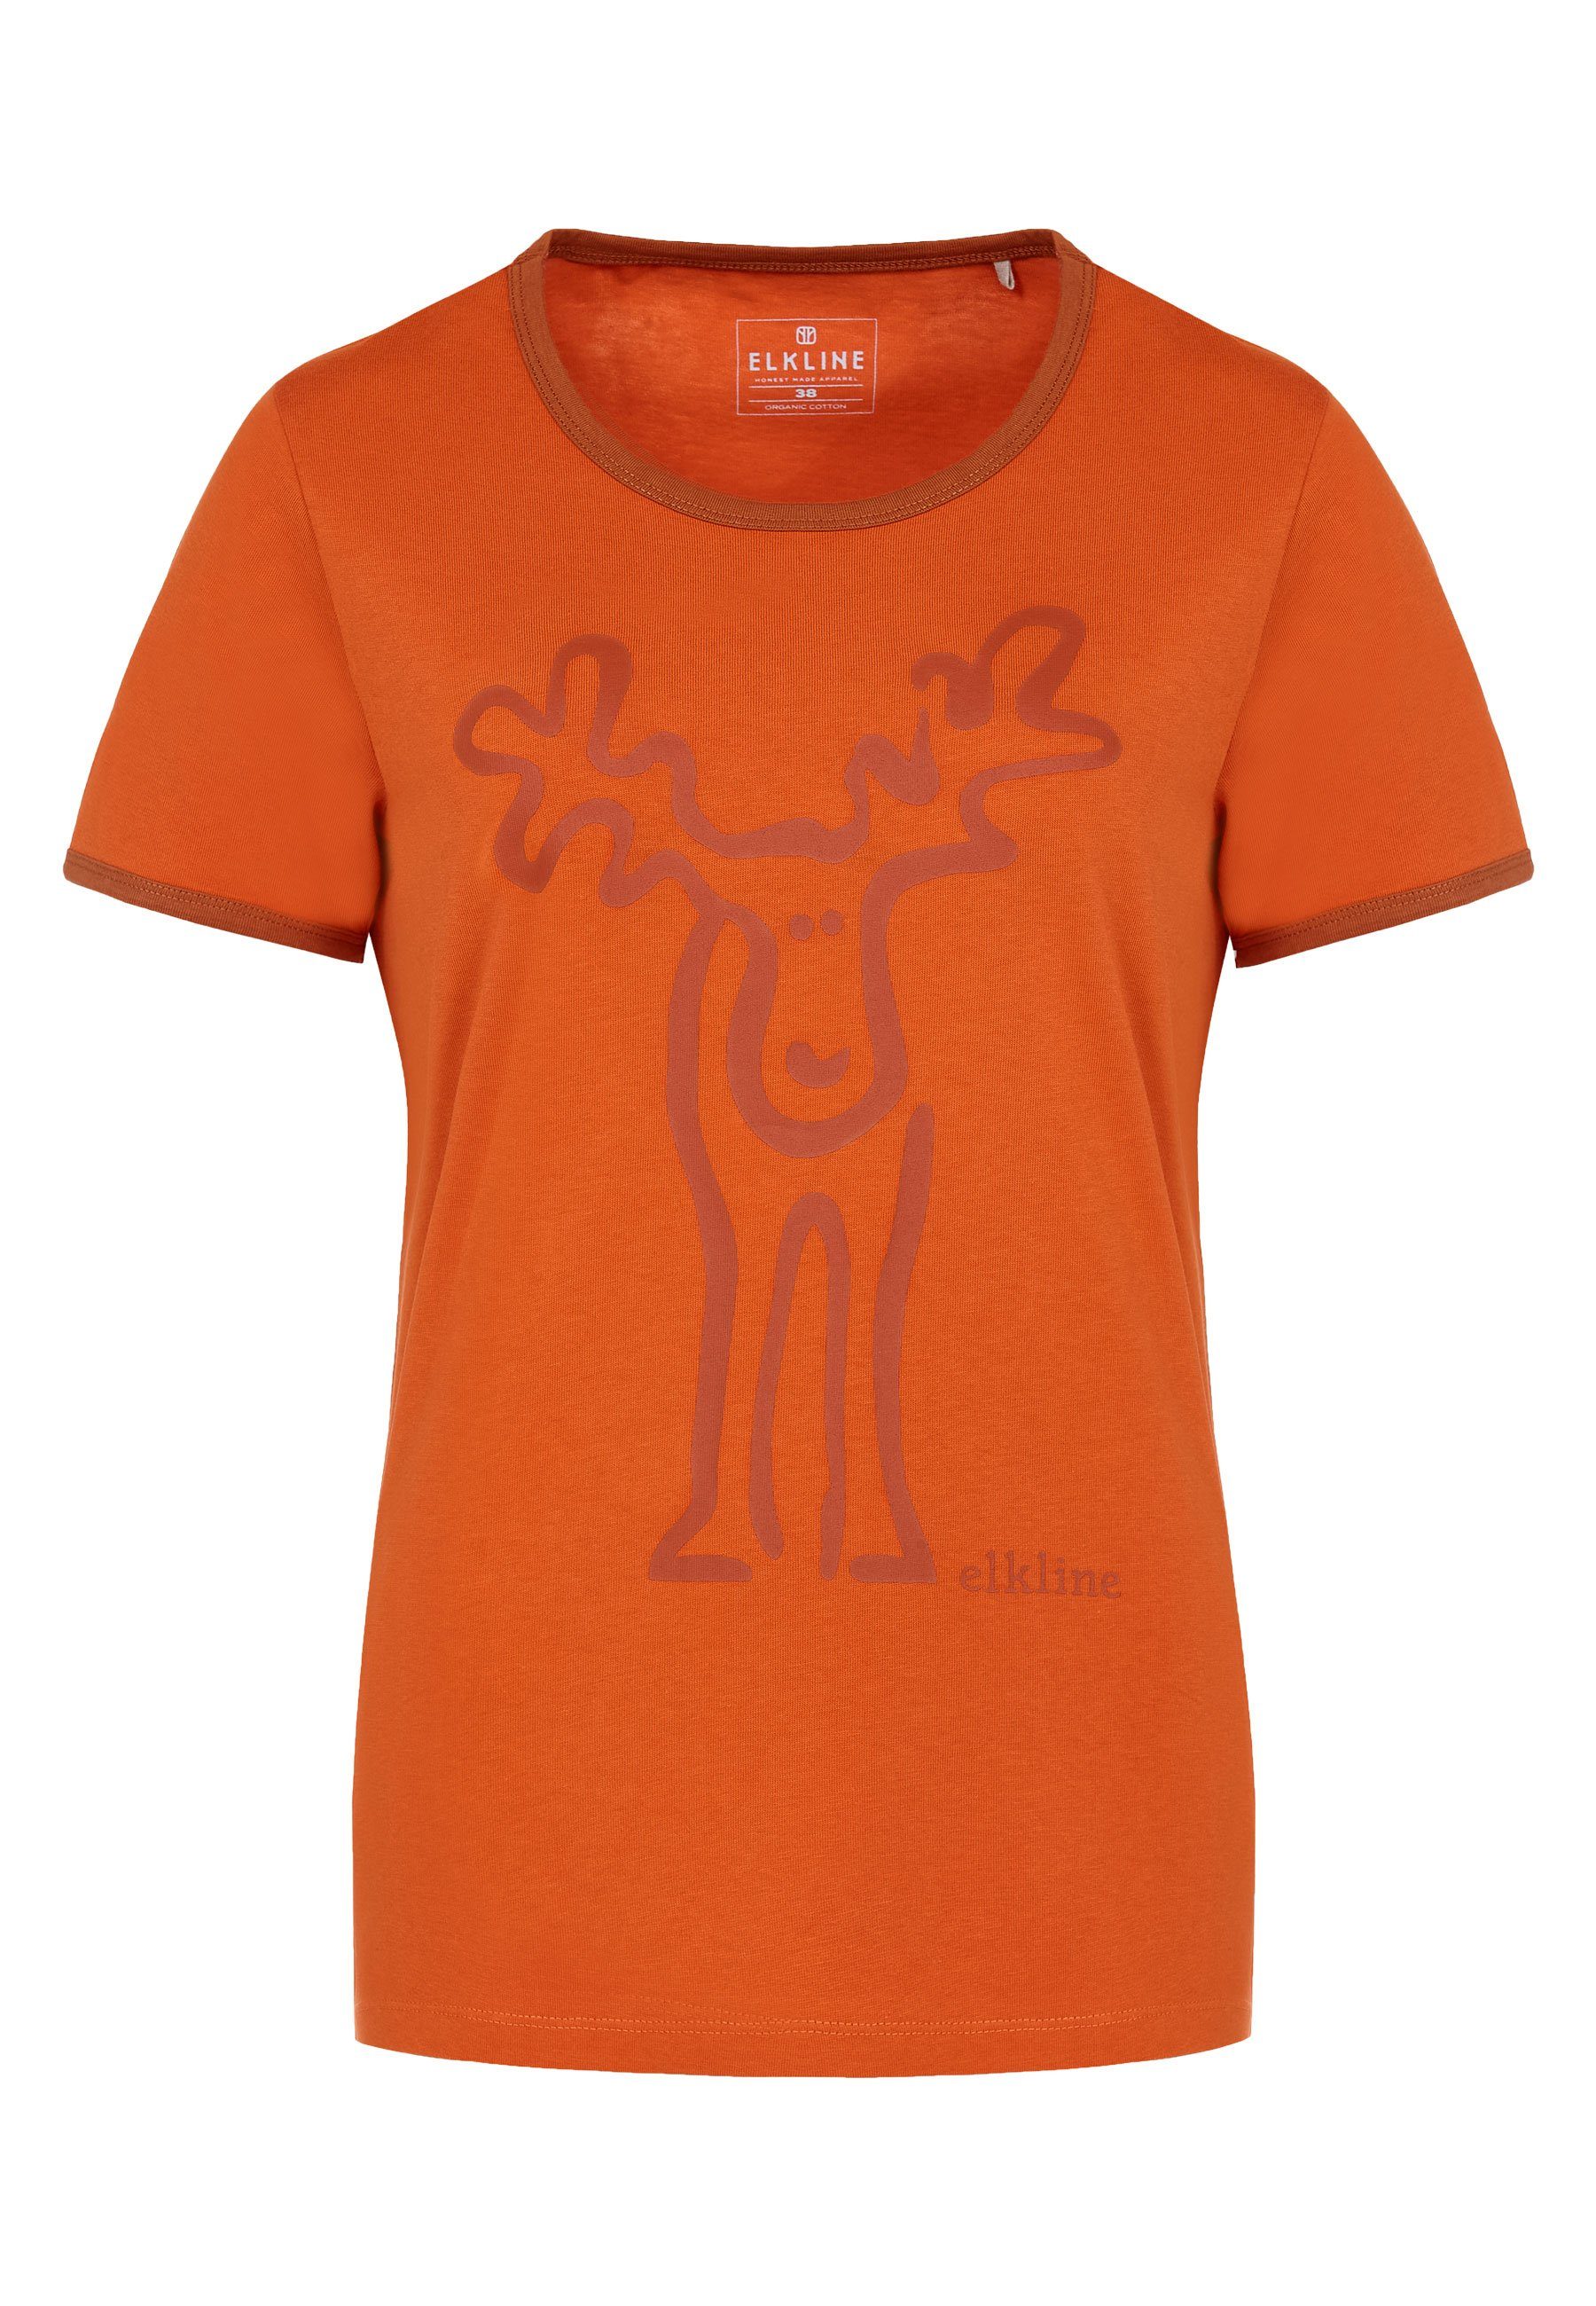 darkorange Rudolfine Rücken rust orange T-Shirt Elch Brust - Print Retro und Elkline